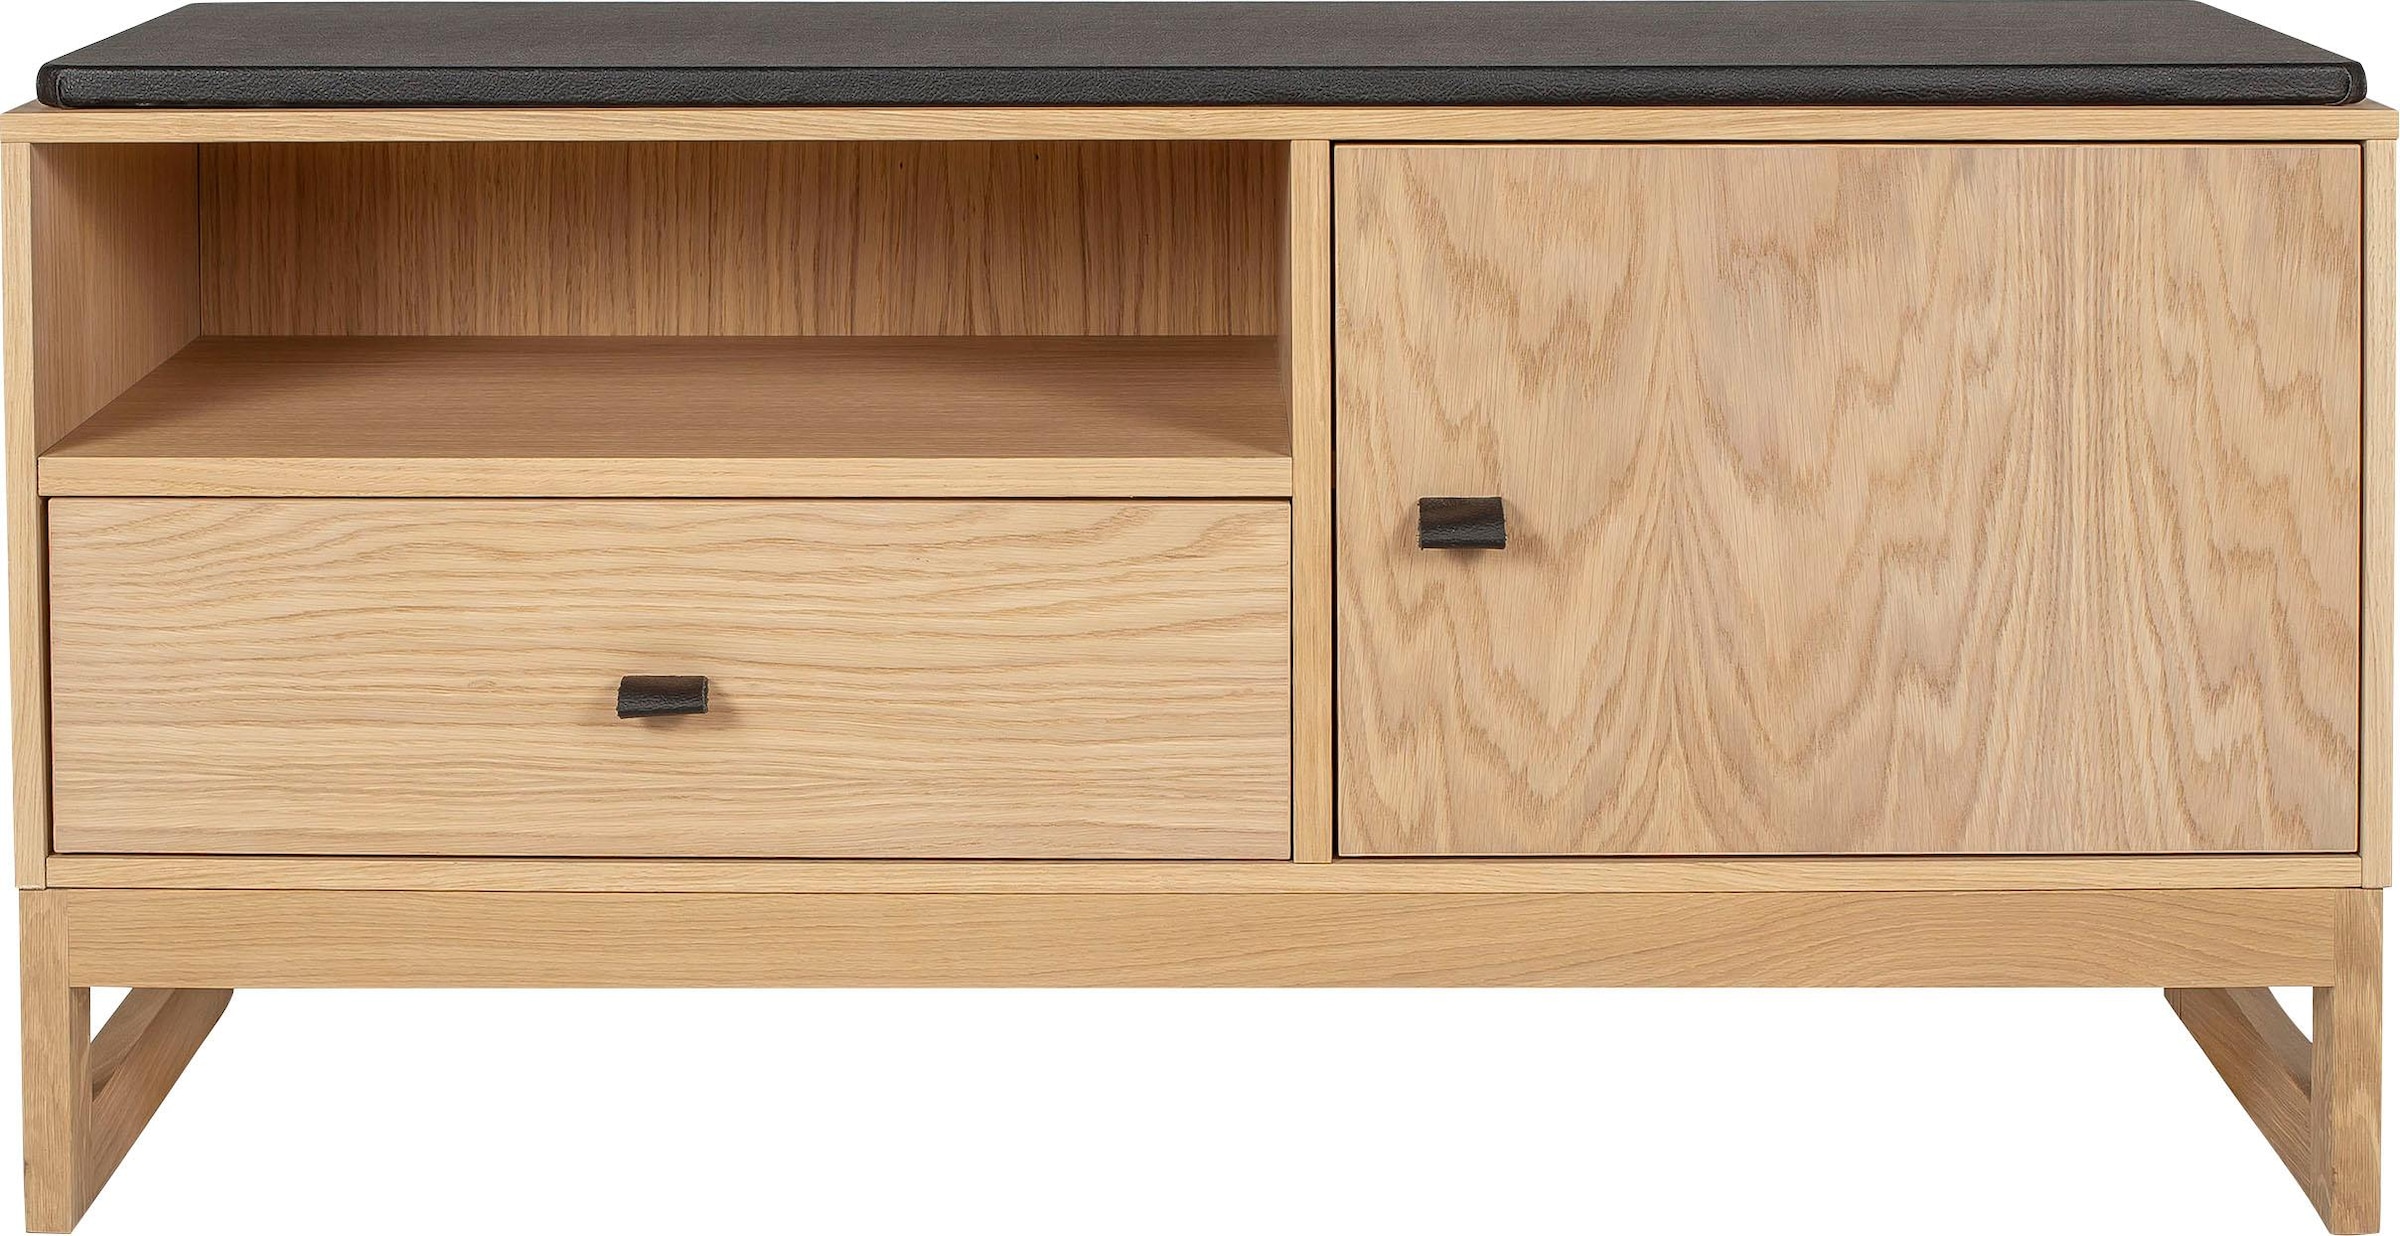 Woodman Schuhbank »Slussen«, im skandinavian Design, Holzfurnier aus Eiche  kaufen